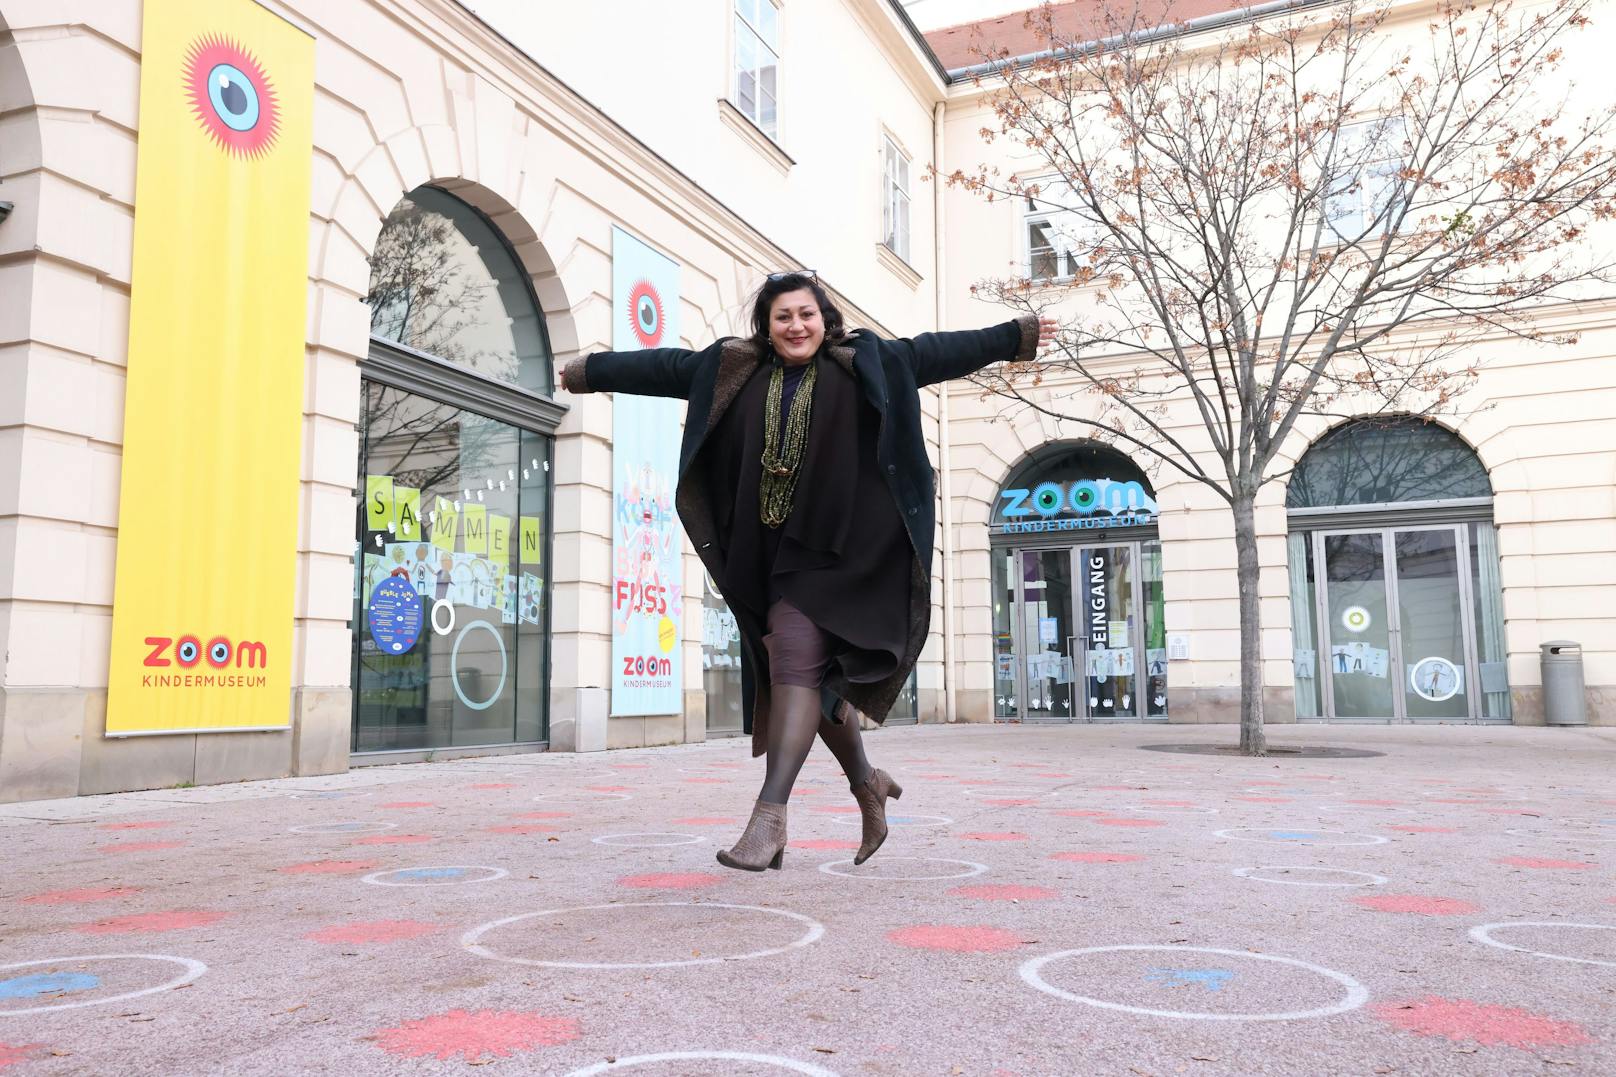 Ein zweites "Zoom"-Kindermuseum will Kulturstadträtin Veronica Kaup-Hasler in Transdanubien errichten.